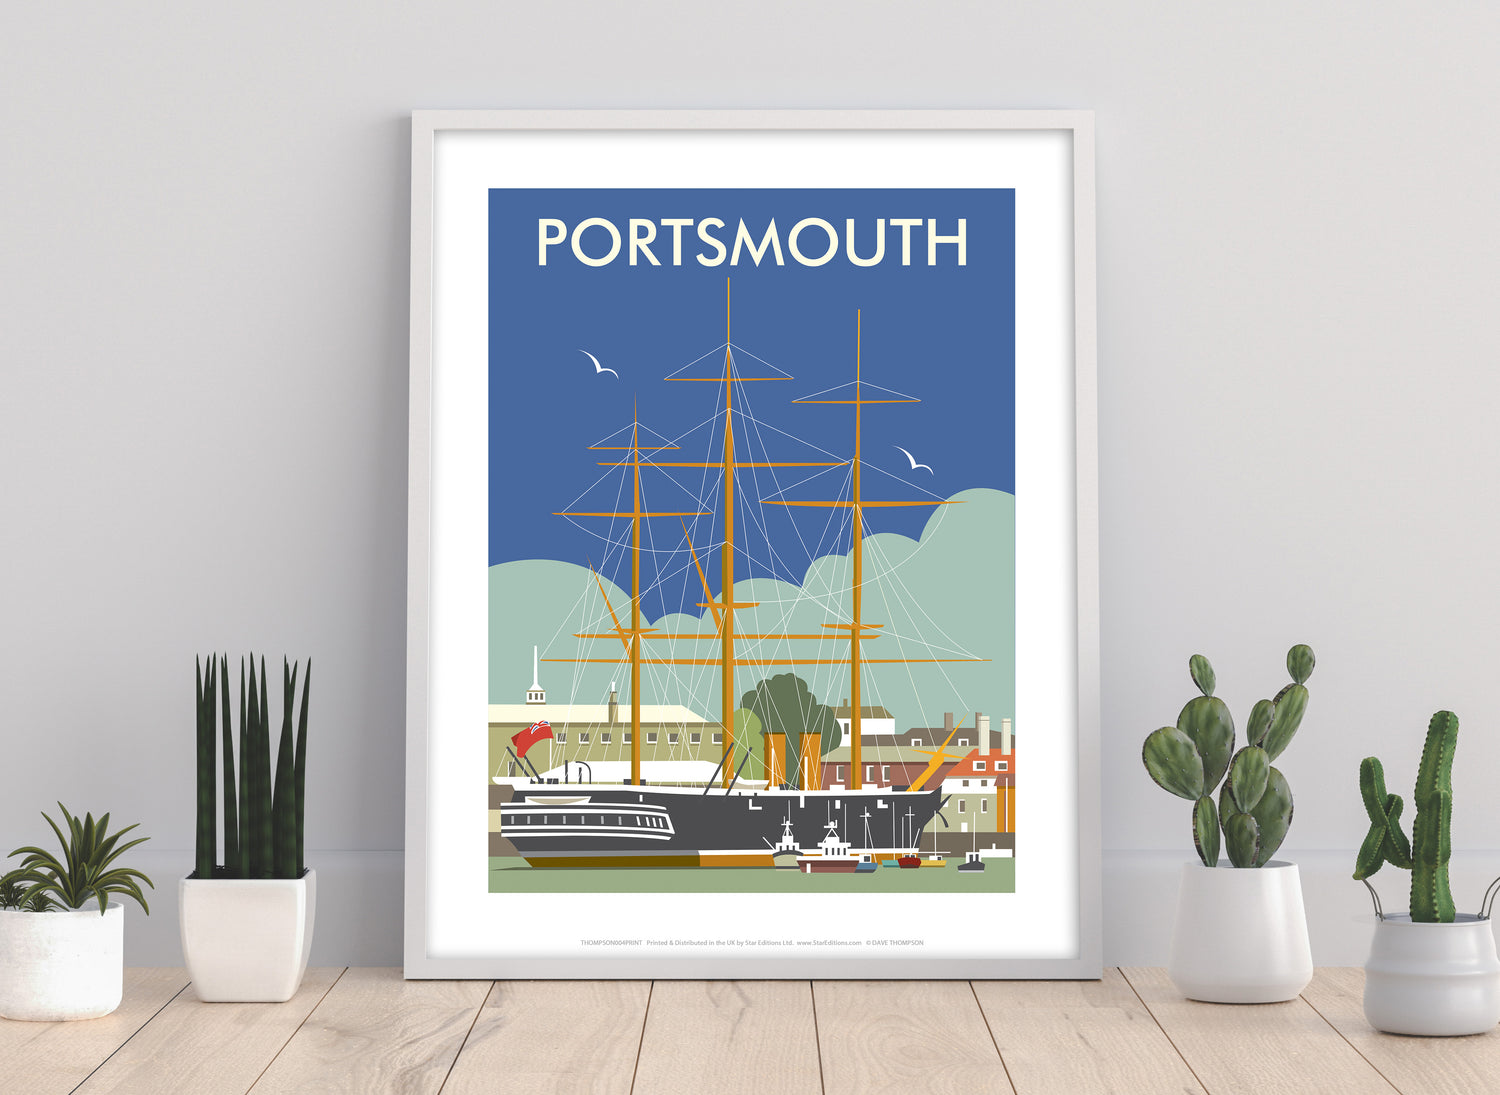 HMS Warrior, Portsmouth - Art Print